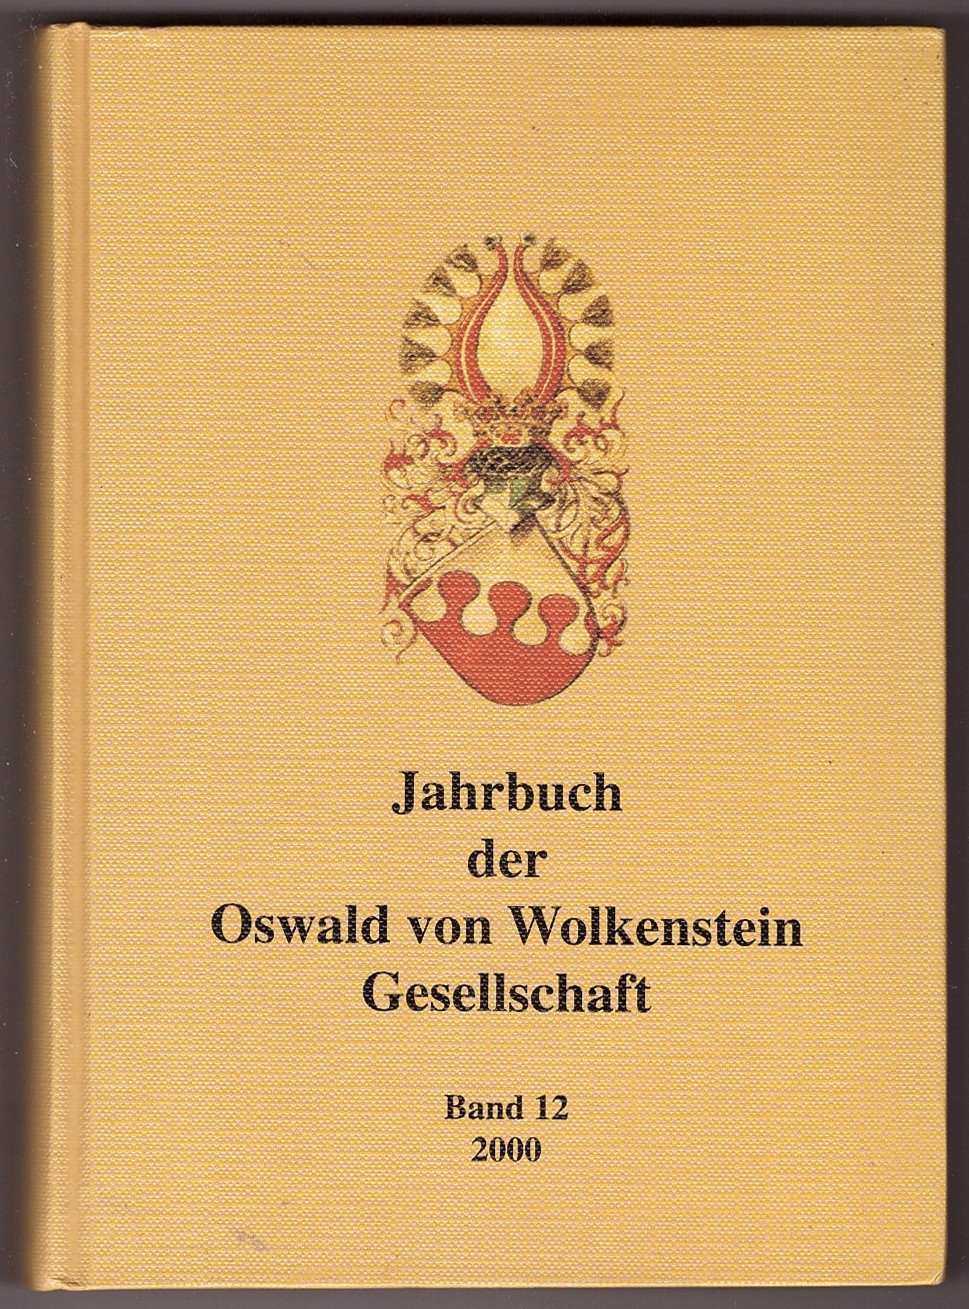 HARTMANN, SIEGLINDE & ULRICH MLLER (EDITORS) - Jahrbuch Der Oswald Von Wolkenstein Gesellschaft Band 12 2000